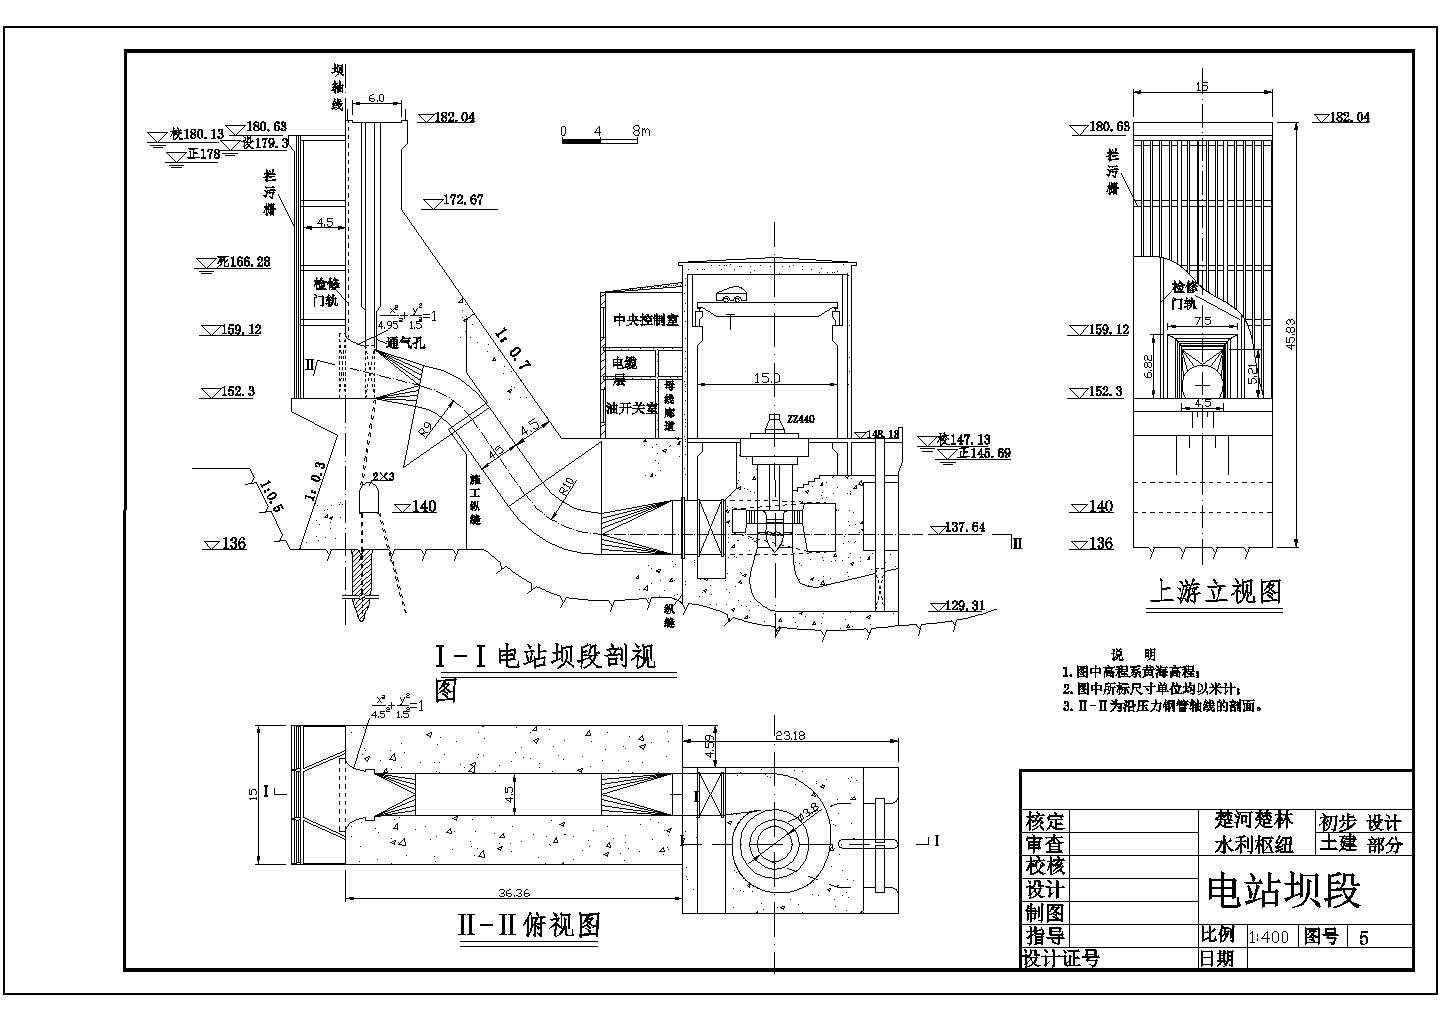 【最新】某水利枢纽图-土建部分初步设计CAD图纸